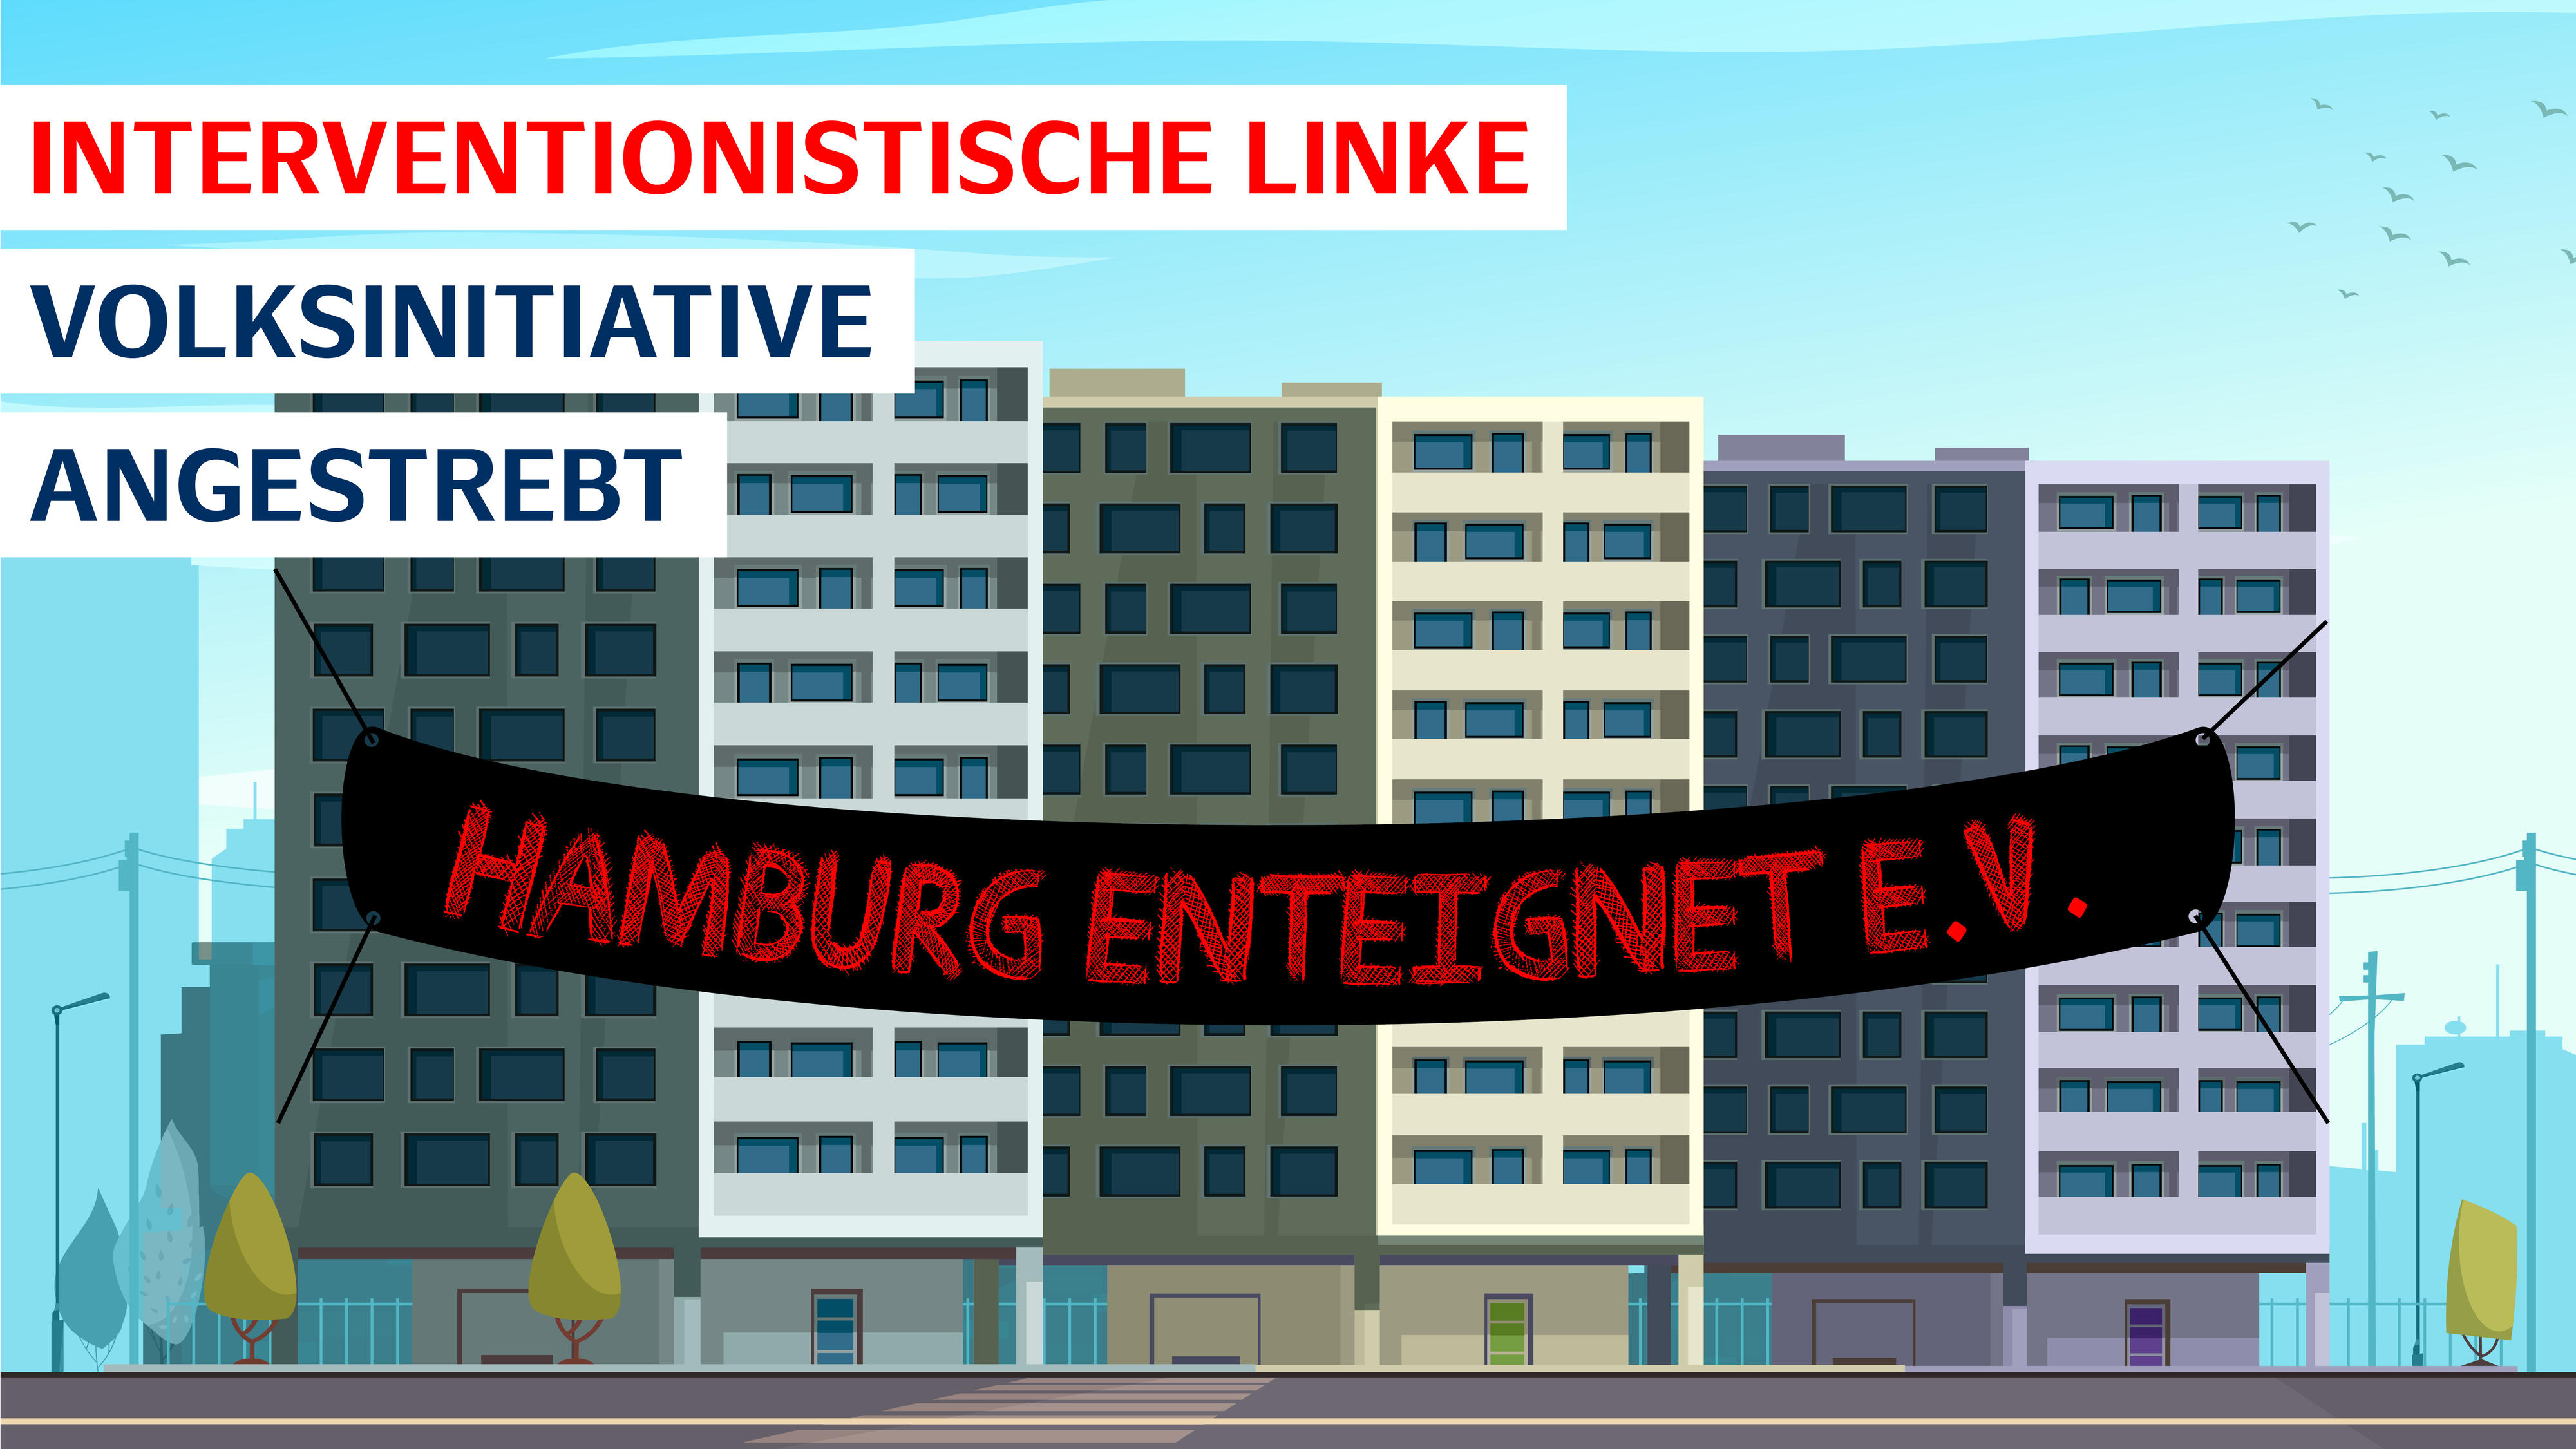 Interventionistische Linke - Hamburg enteignet e.V.